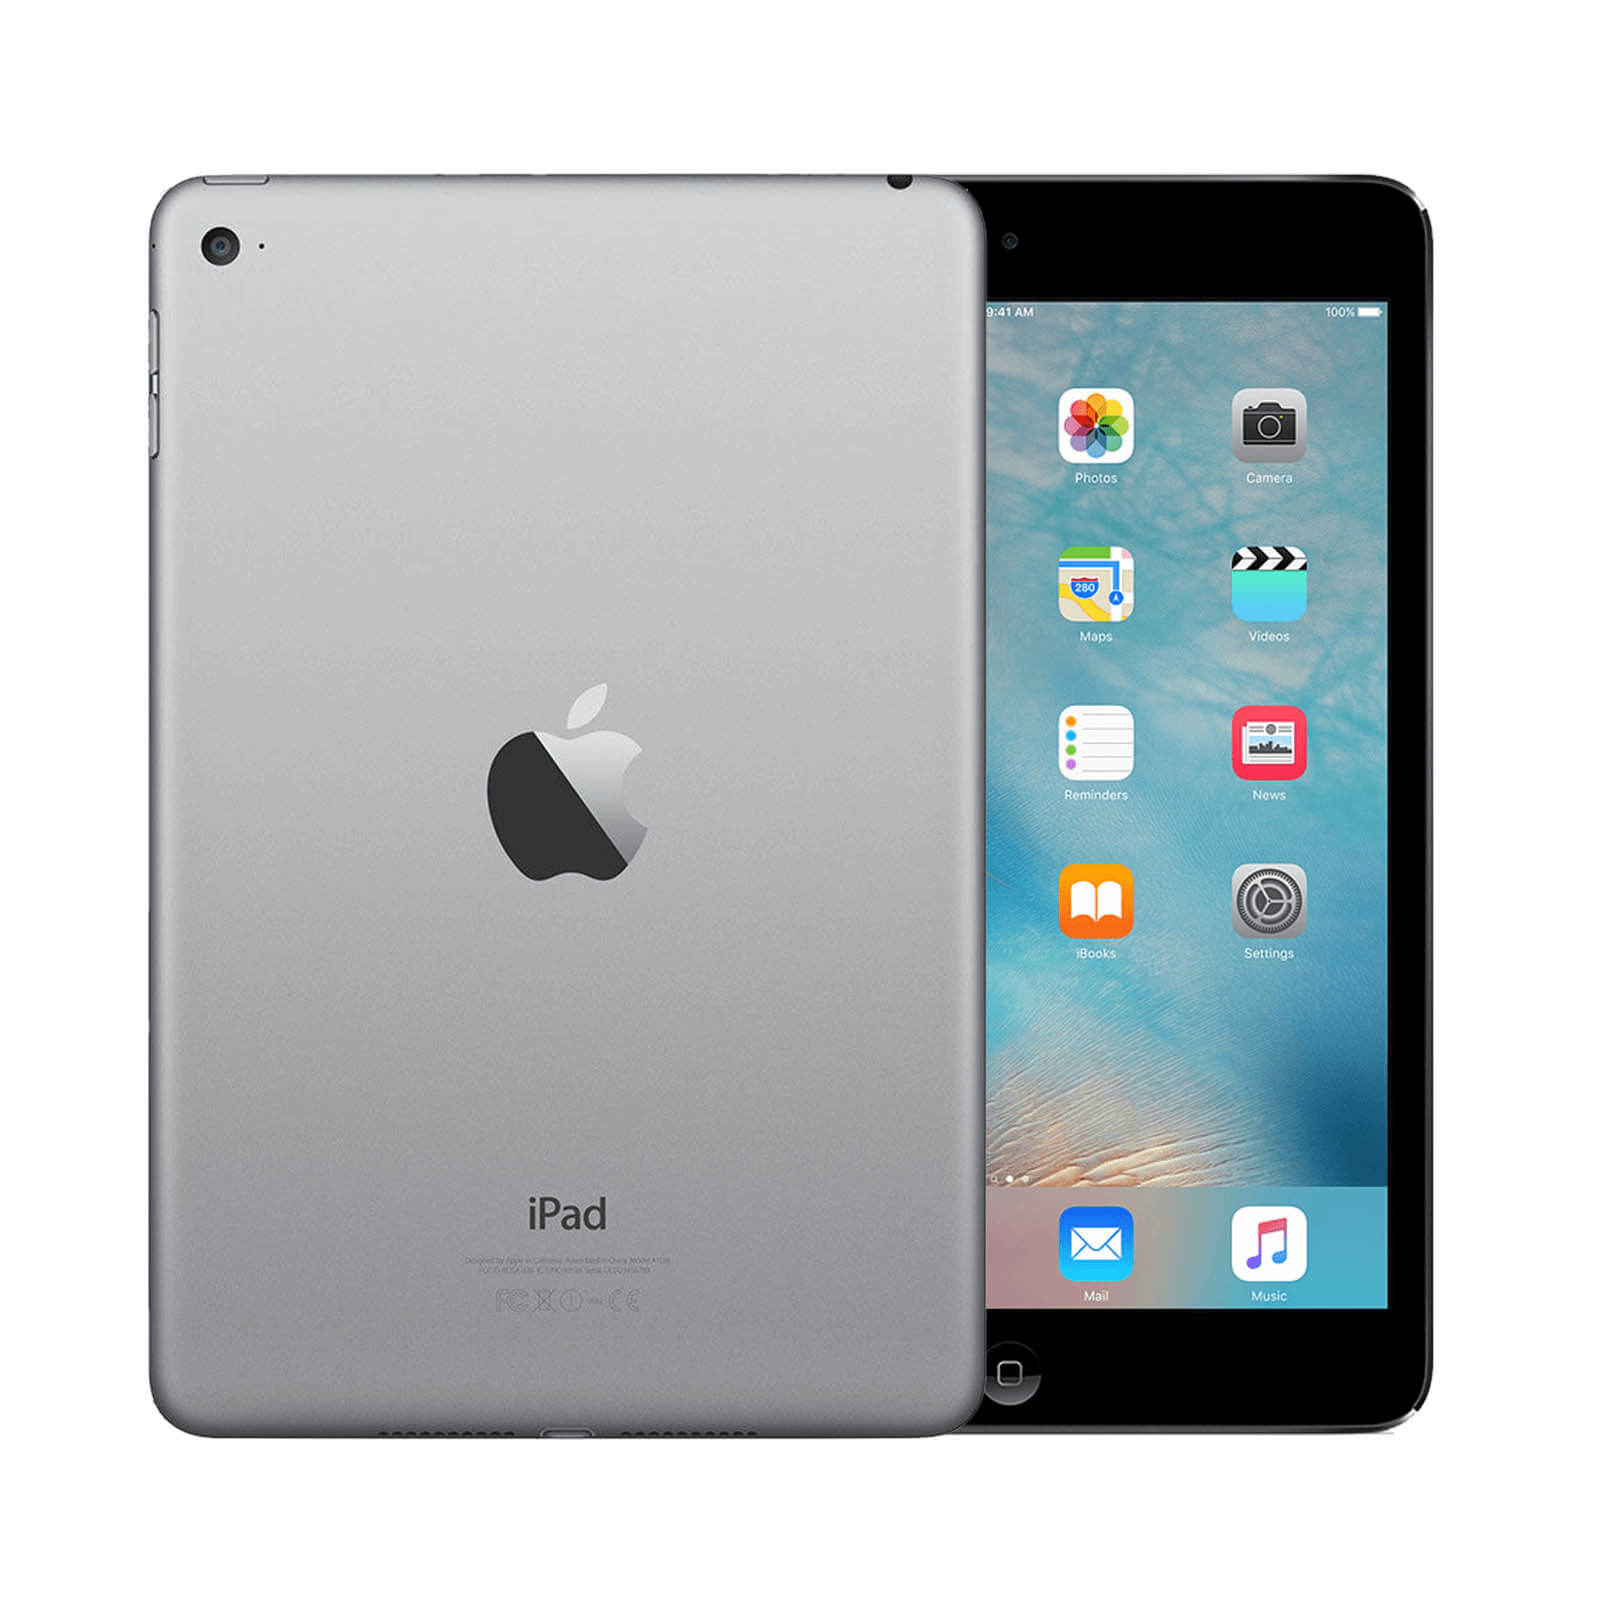 Apple iPad Mini 4 128GB Space Grey WiFi - Good 128GB Space Grey Good